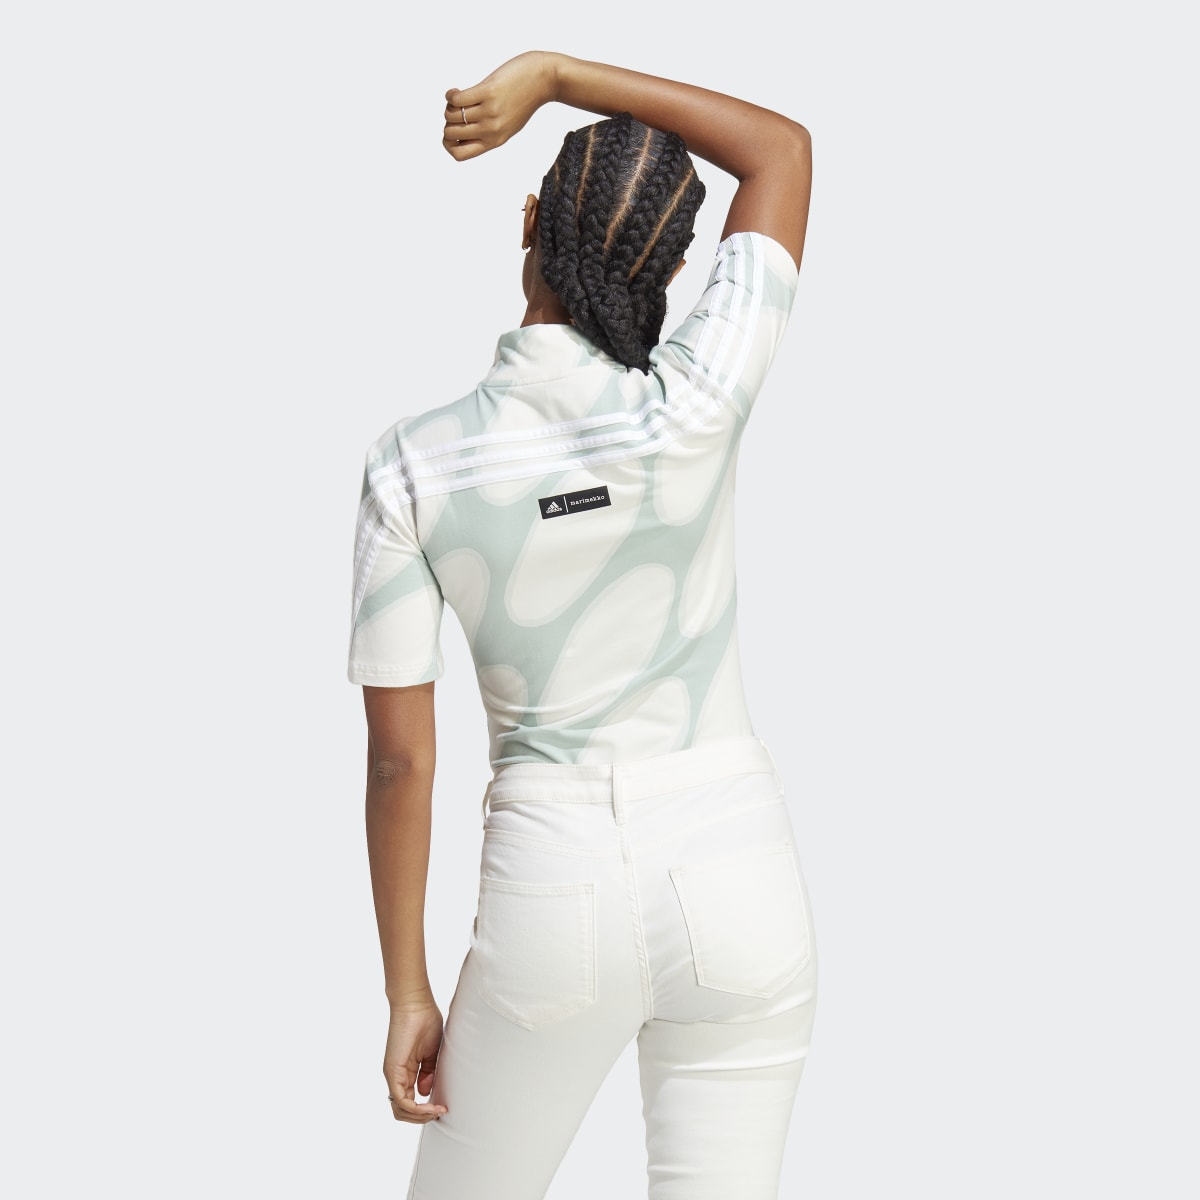 Adidas x Marimekko Future Icons Three Stripes Body. 4